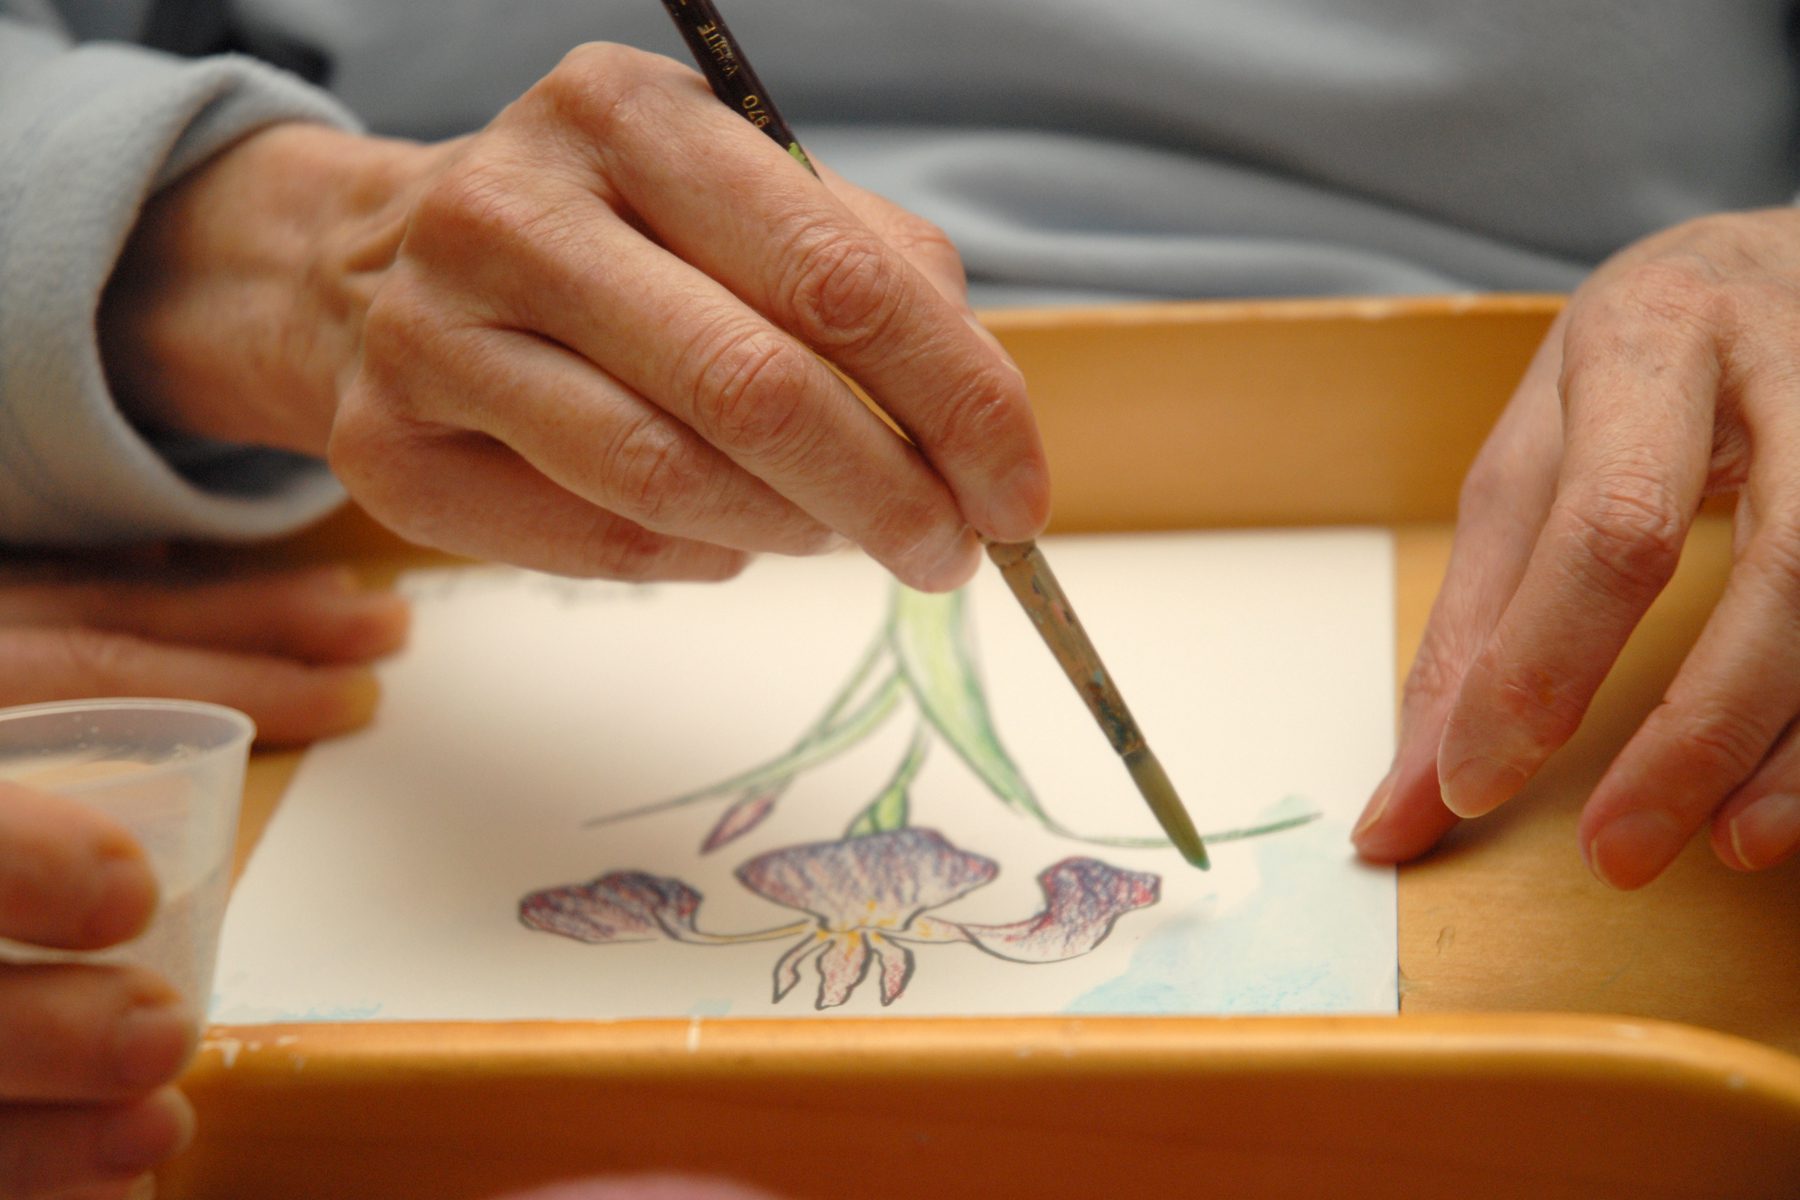 A patient creates art